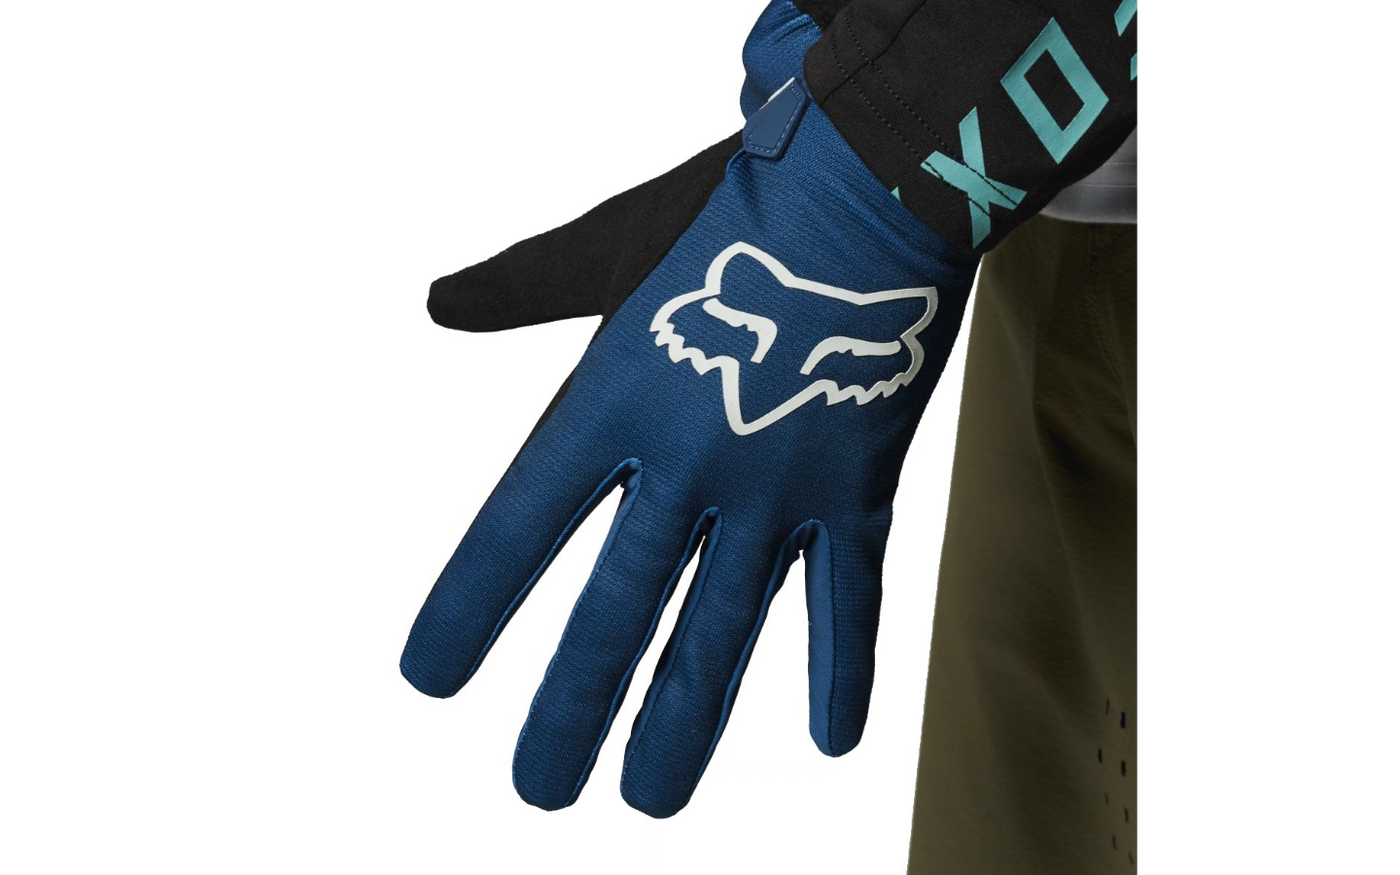 Gloves Fox Ranger 21